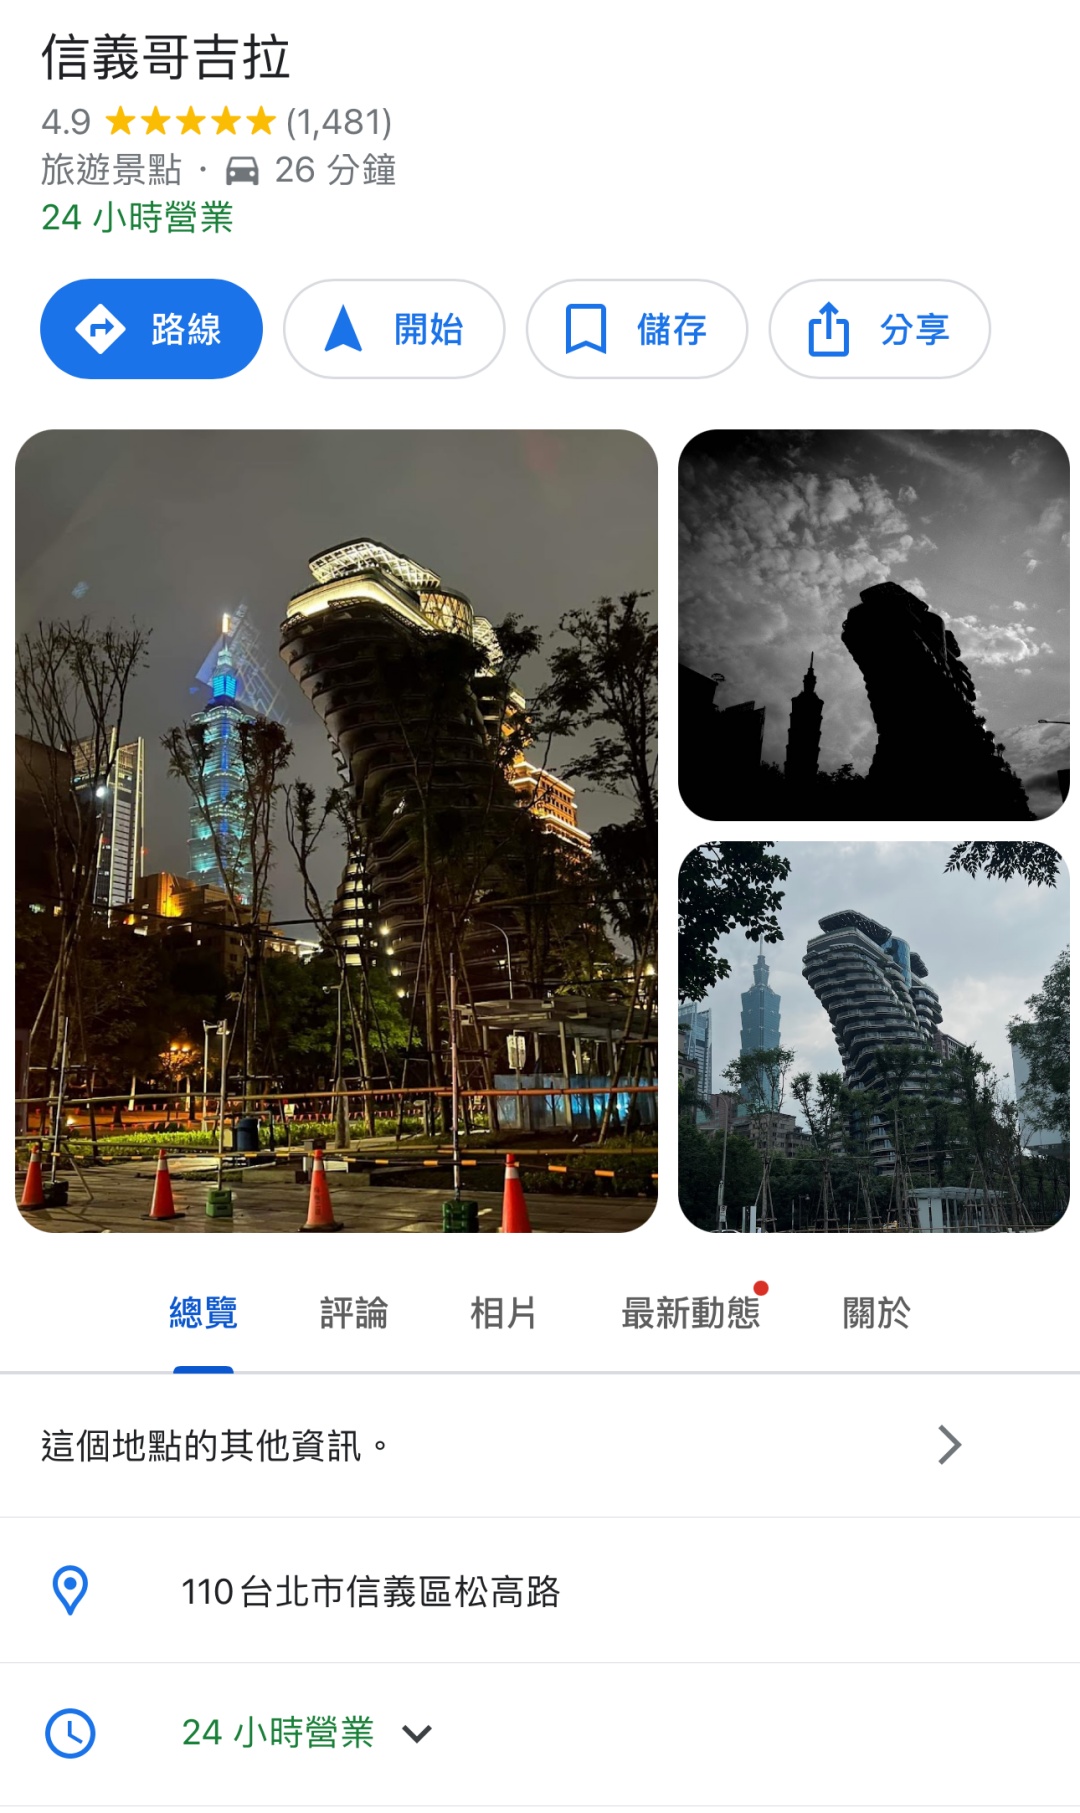 台北新旅遊景點「信義哥吉拉」